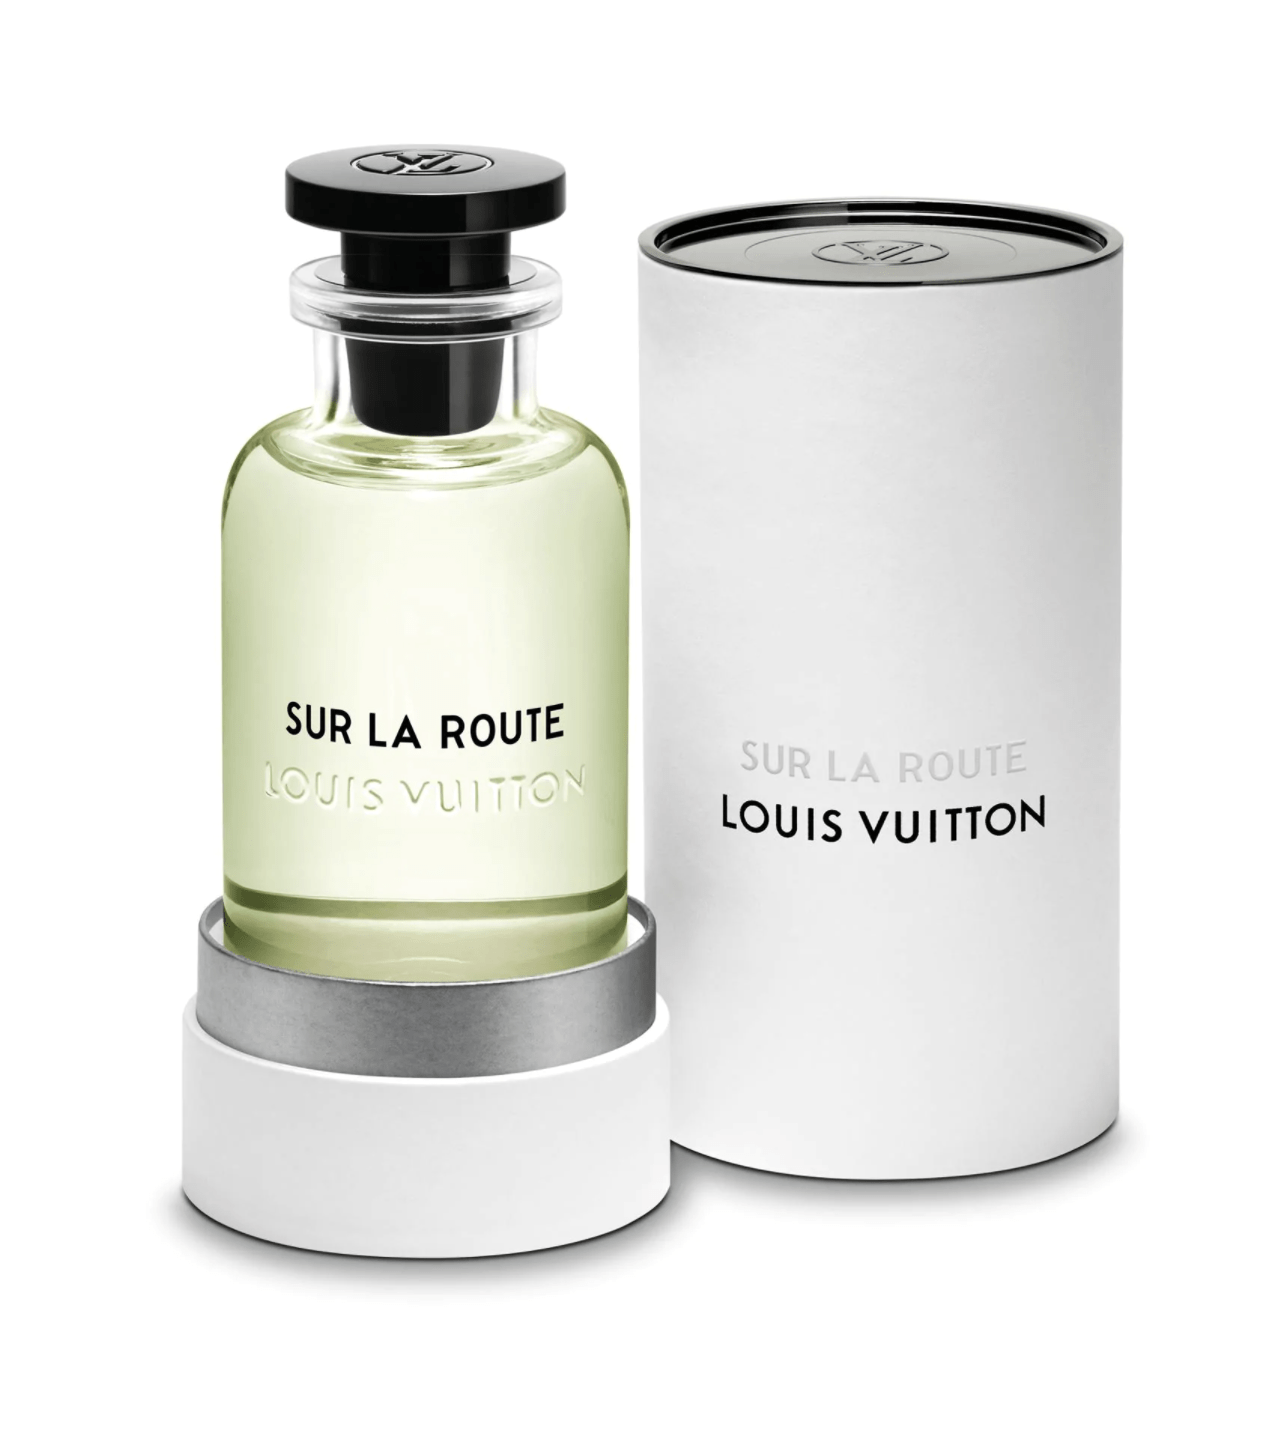 SUR LA ROUTE Louis Vuitton perfume - Depop